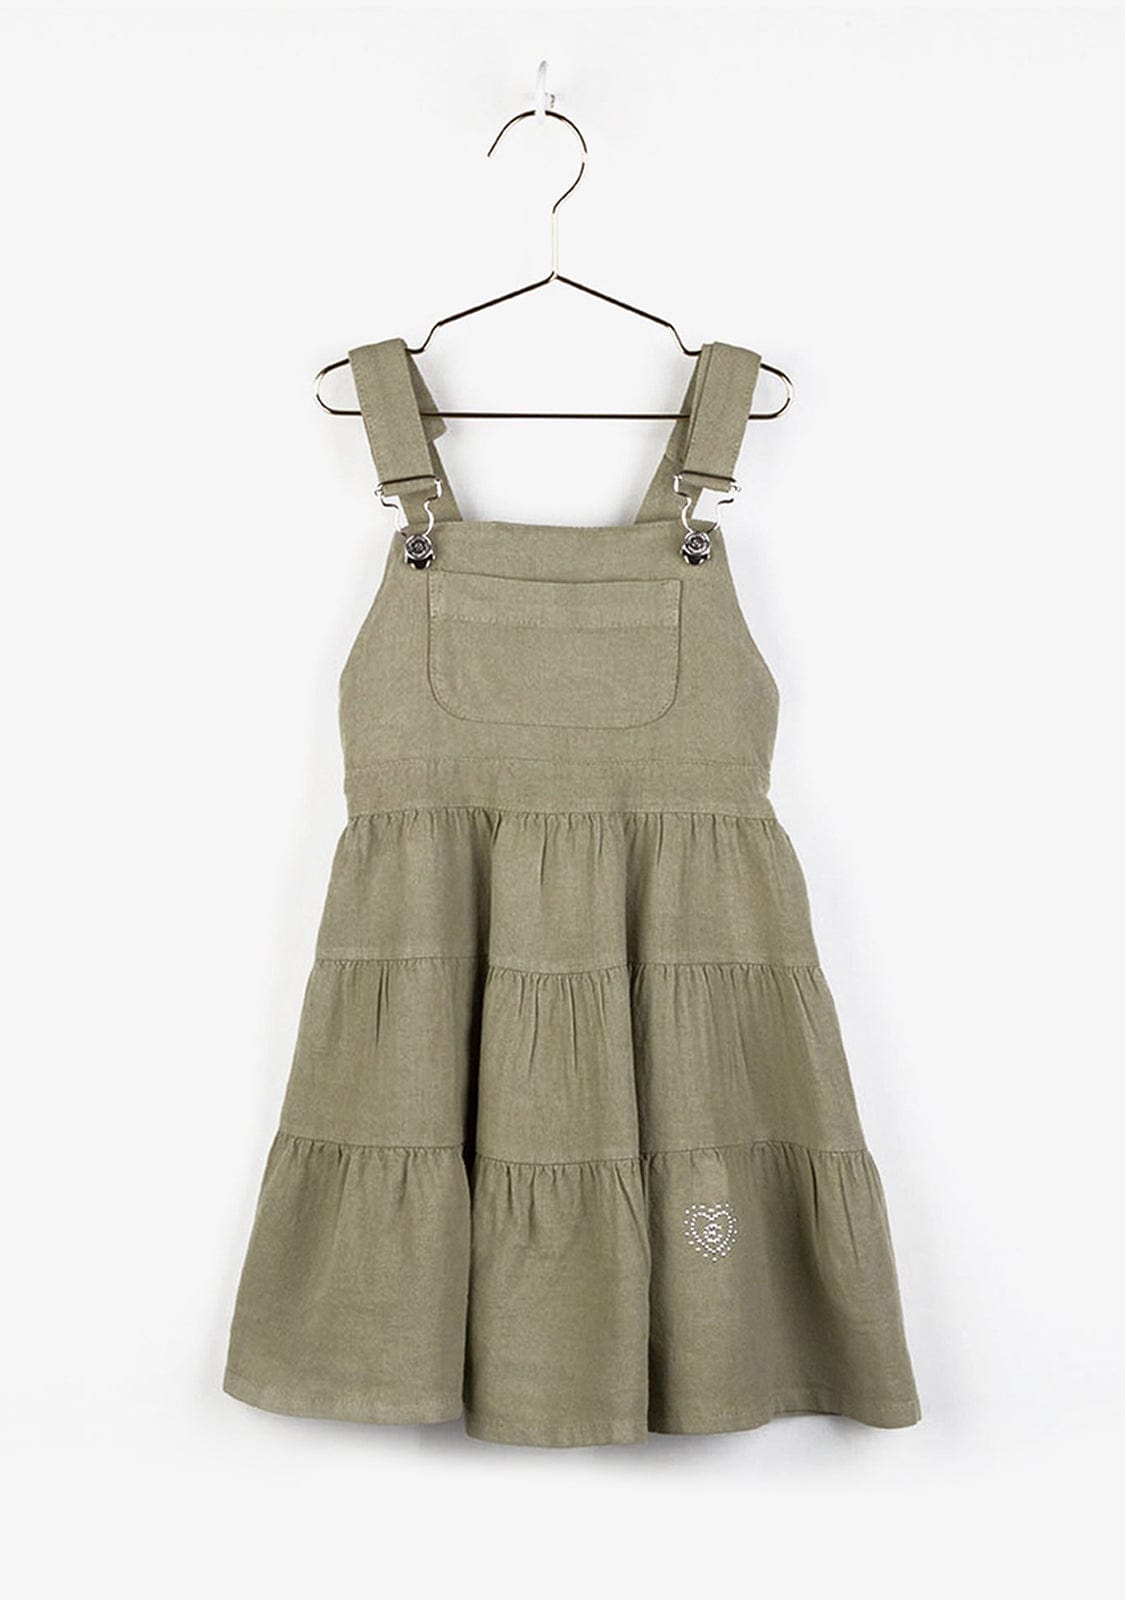 CONGUITOS TEXTIL Clothing Girl's Khaki Pinafore Dress